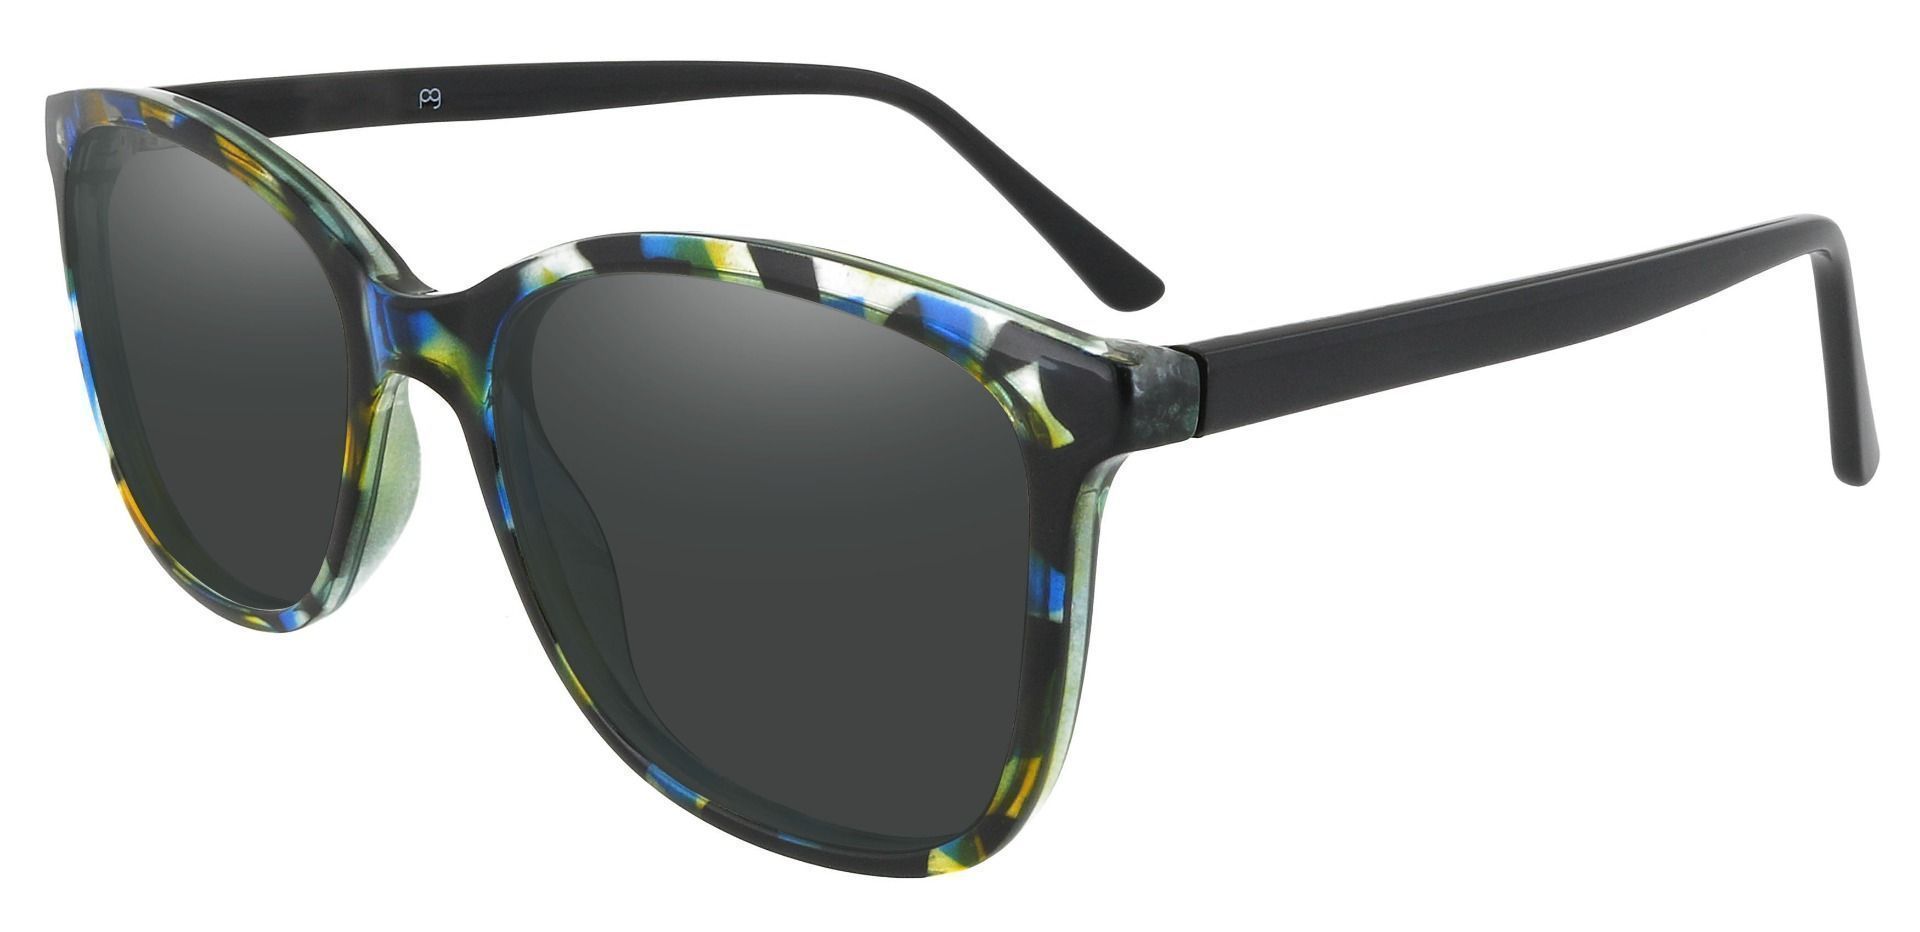 Halpin Square Prescription Sunglasses - Multi Color Frame With Gray Lenses